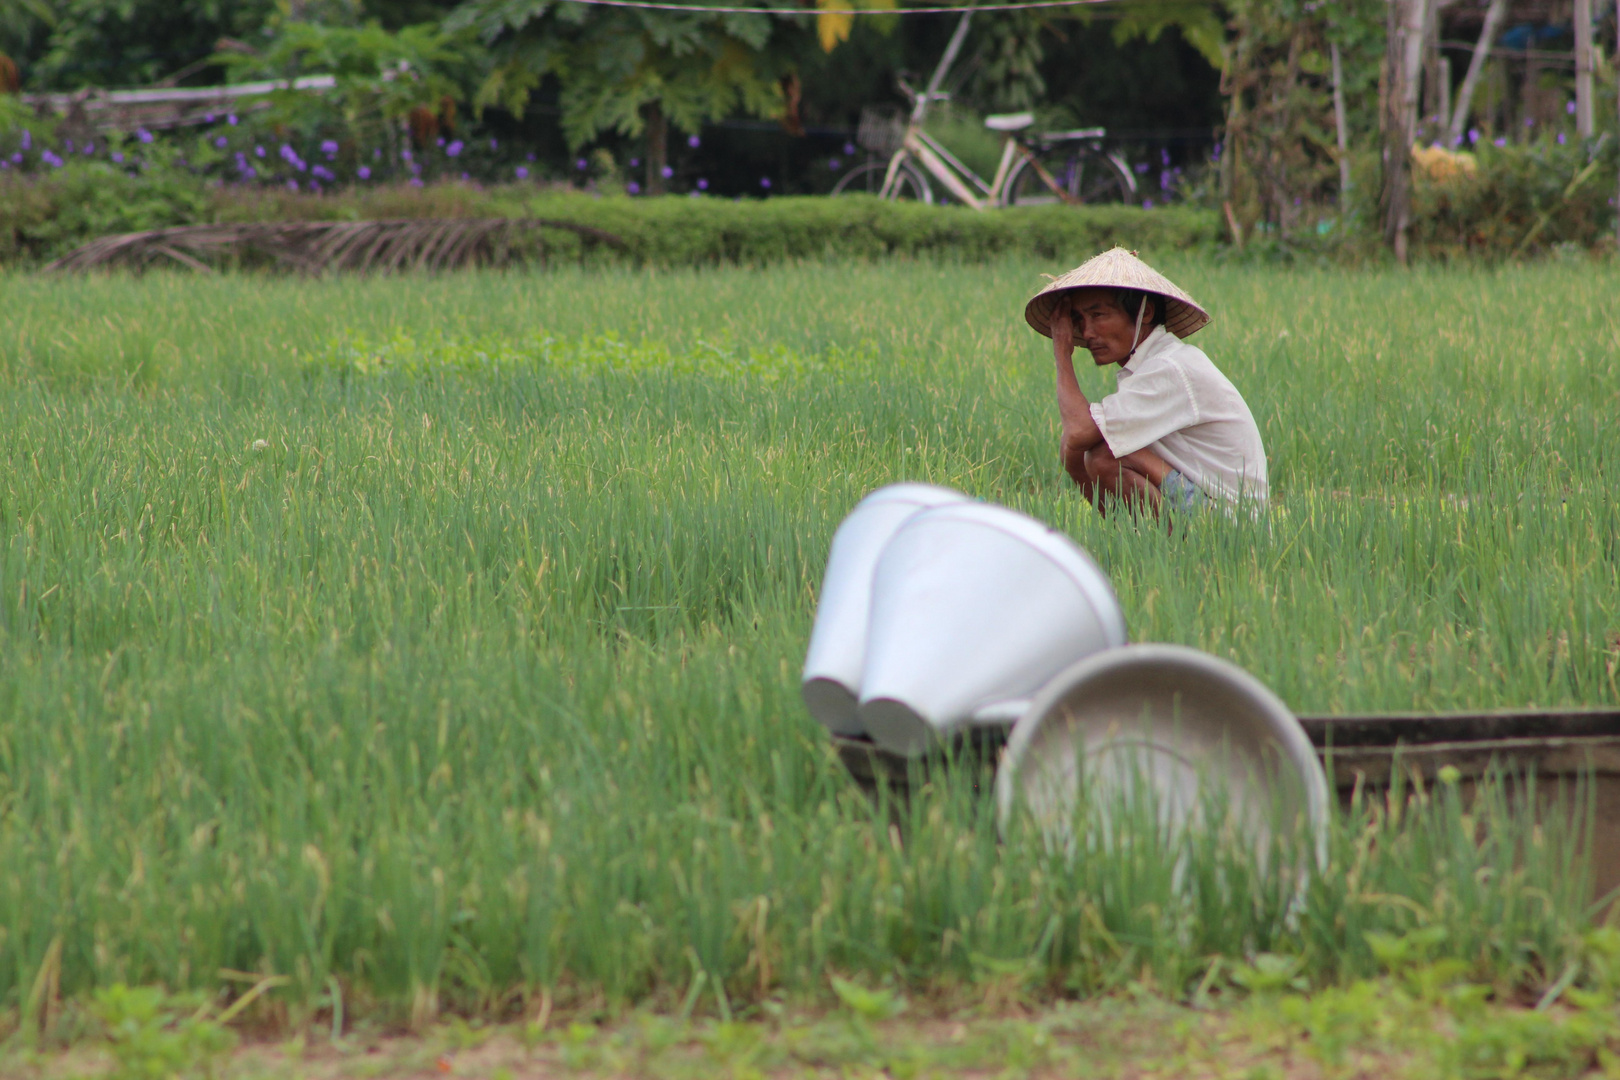 Rice farmer - job done